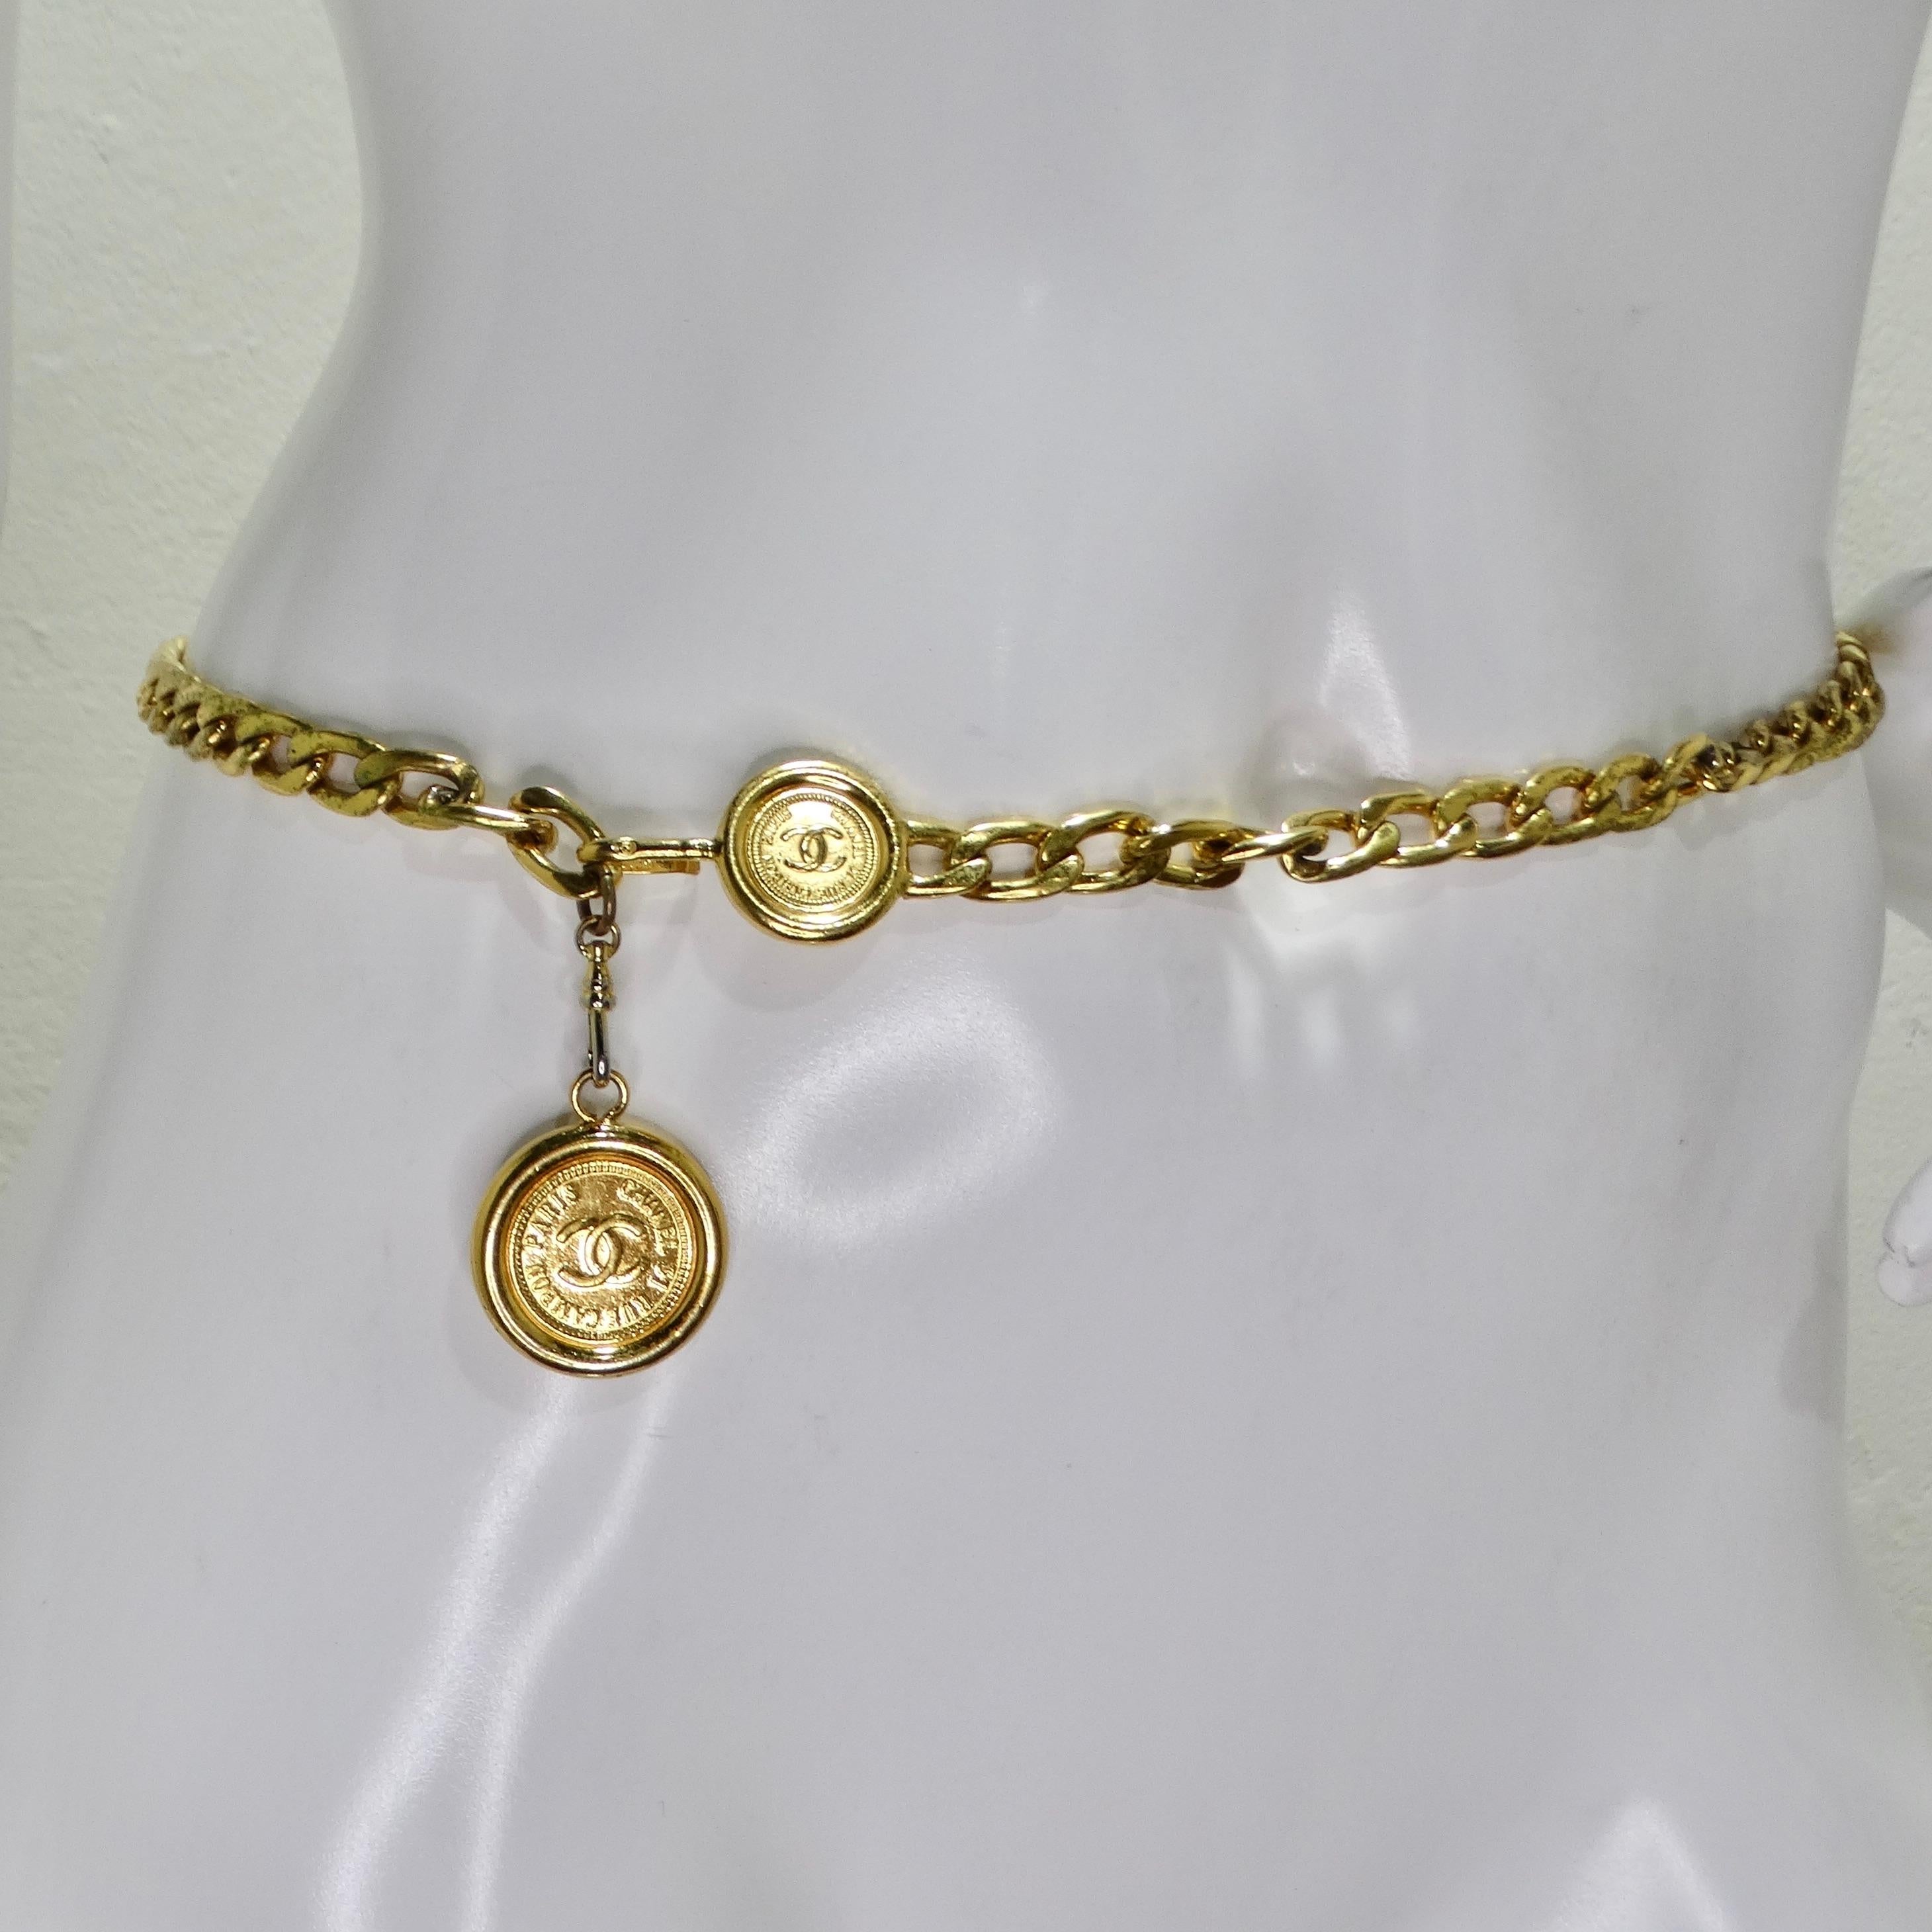 Wir präsentieren den kultigen Chanel Frühjahr 1994 Gold Tone CC Medallion Chain Belt, ein Vintage-Schatz, der zeitlose Eleganz und Raffinesse ausstrahlt. Dieser Gürtel aus gelbvergoldeter Kette ist mit den für Chanel charakteristischen,